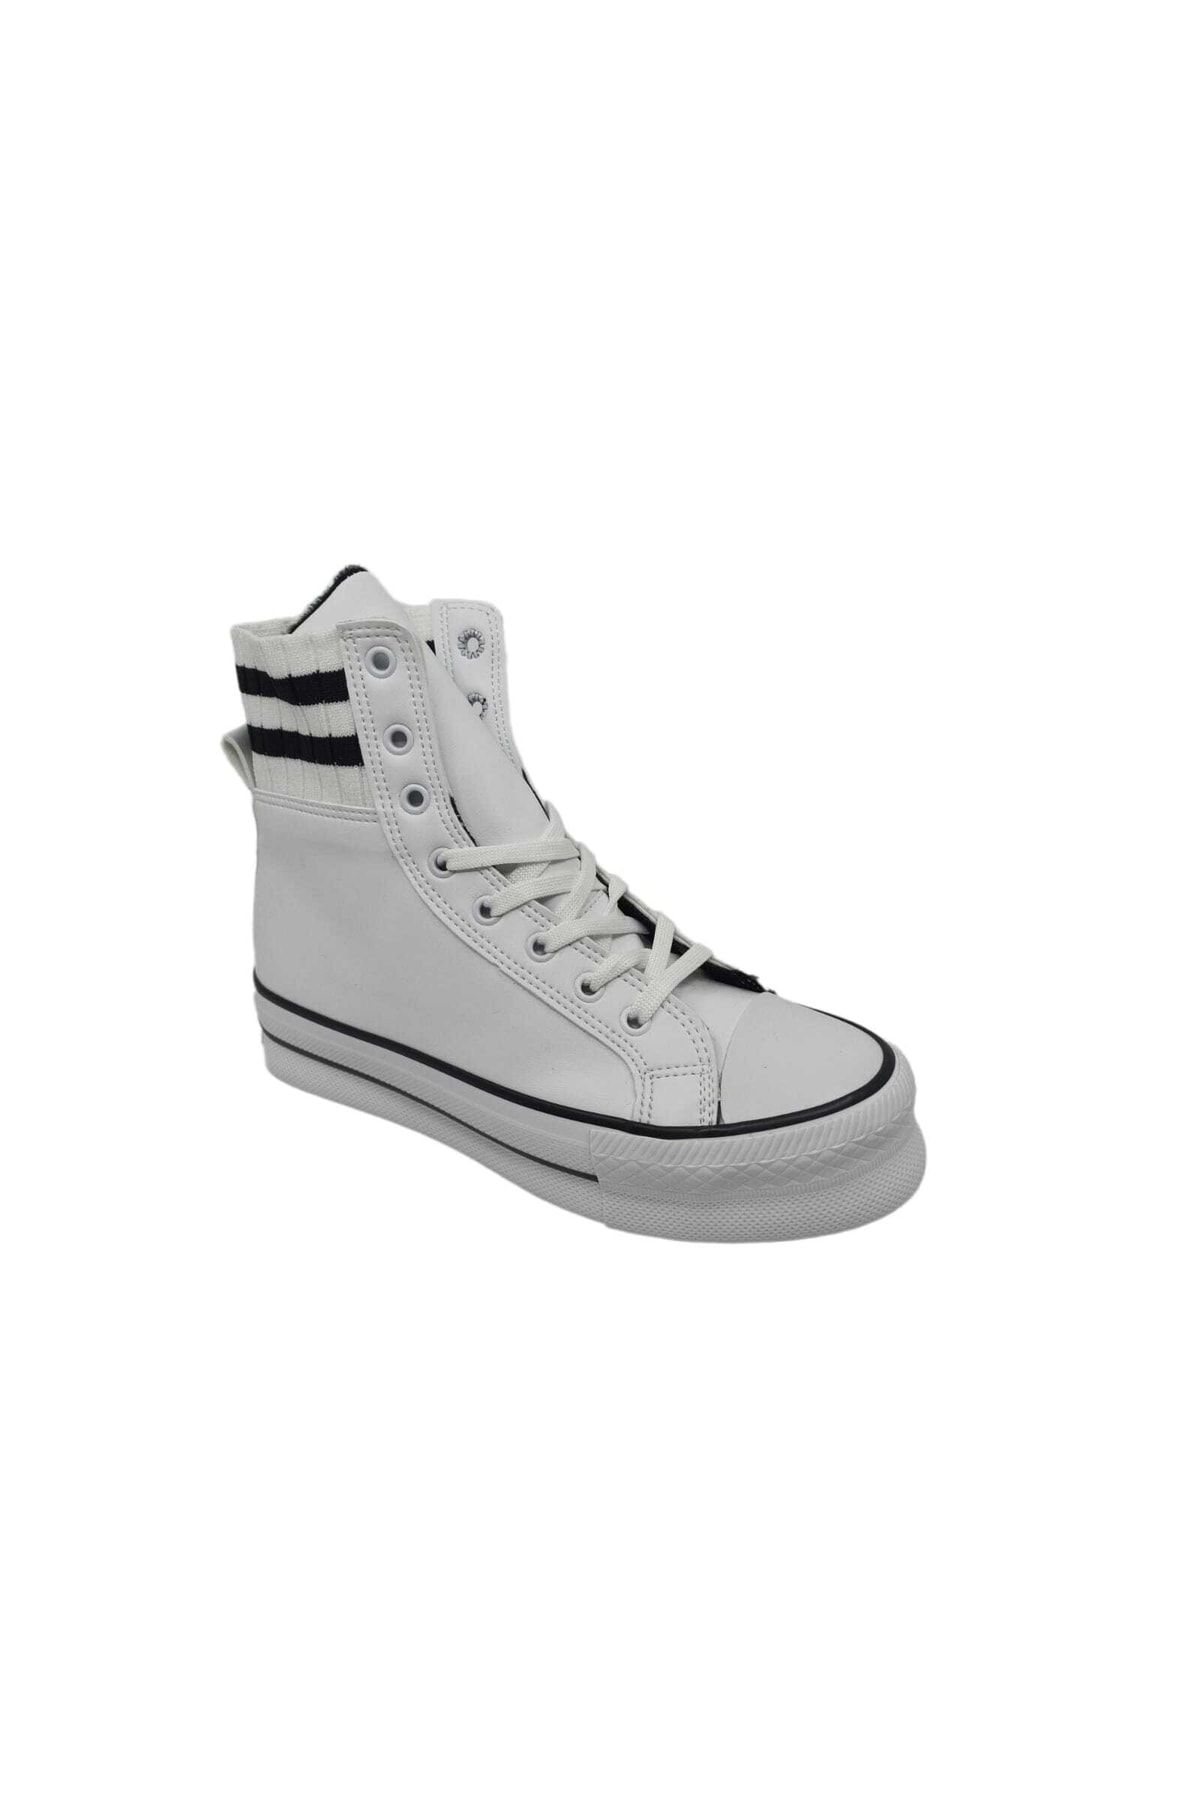 Zerhan 455 Beyaz Kalın Taban Bileği Çoraplı Bağcıklı Spor Ayakkabı Bot